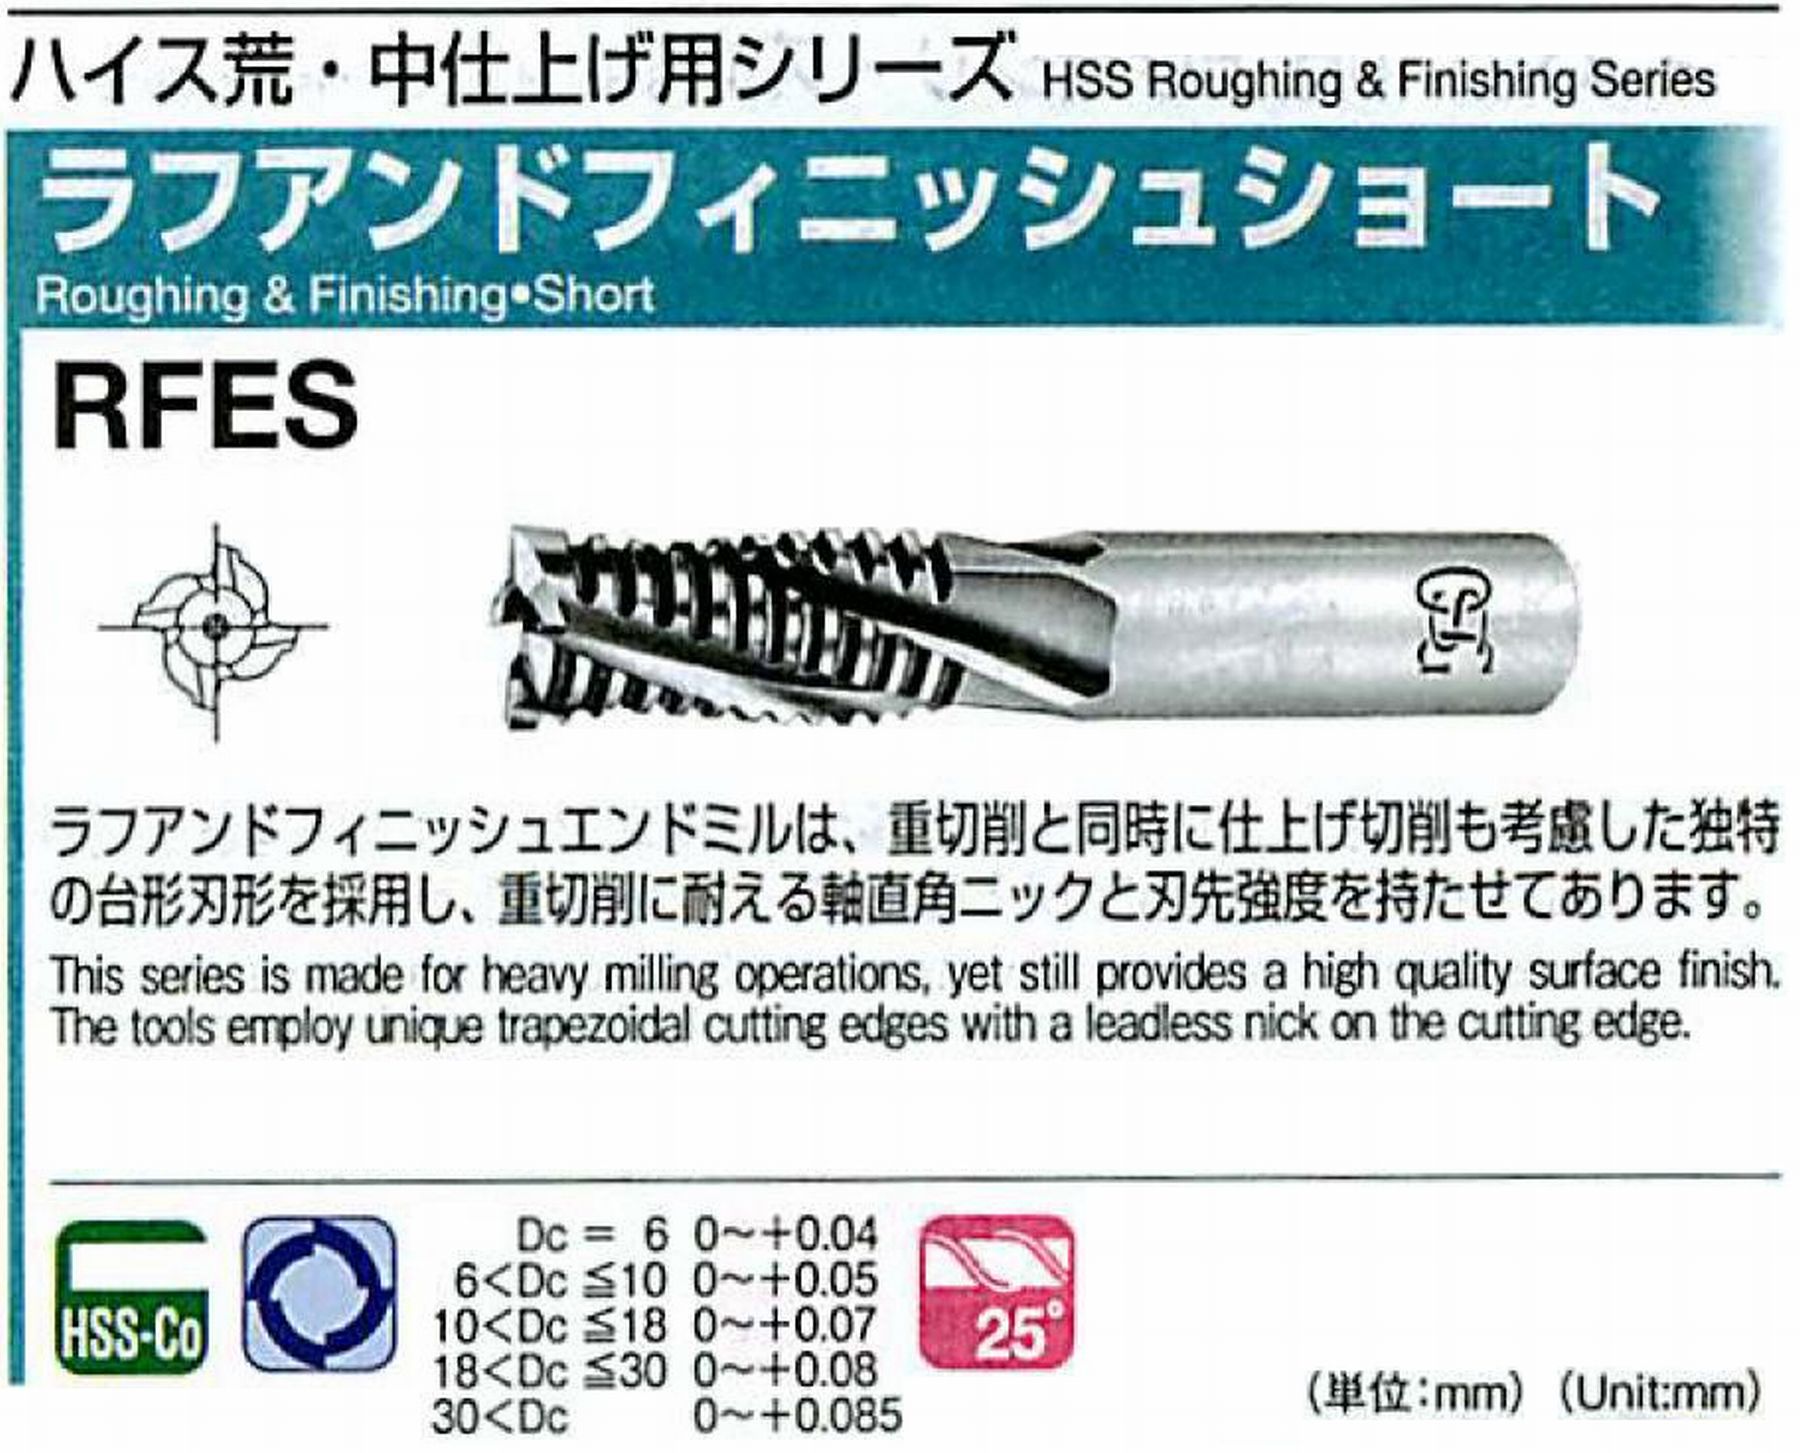 オーエスジー/OSG ラフアンドフィニッシュ ショート RFES 外径15 全長90 刃長36 シャンク径16mm 刃数4